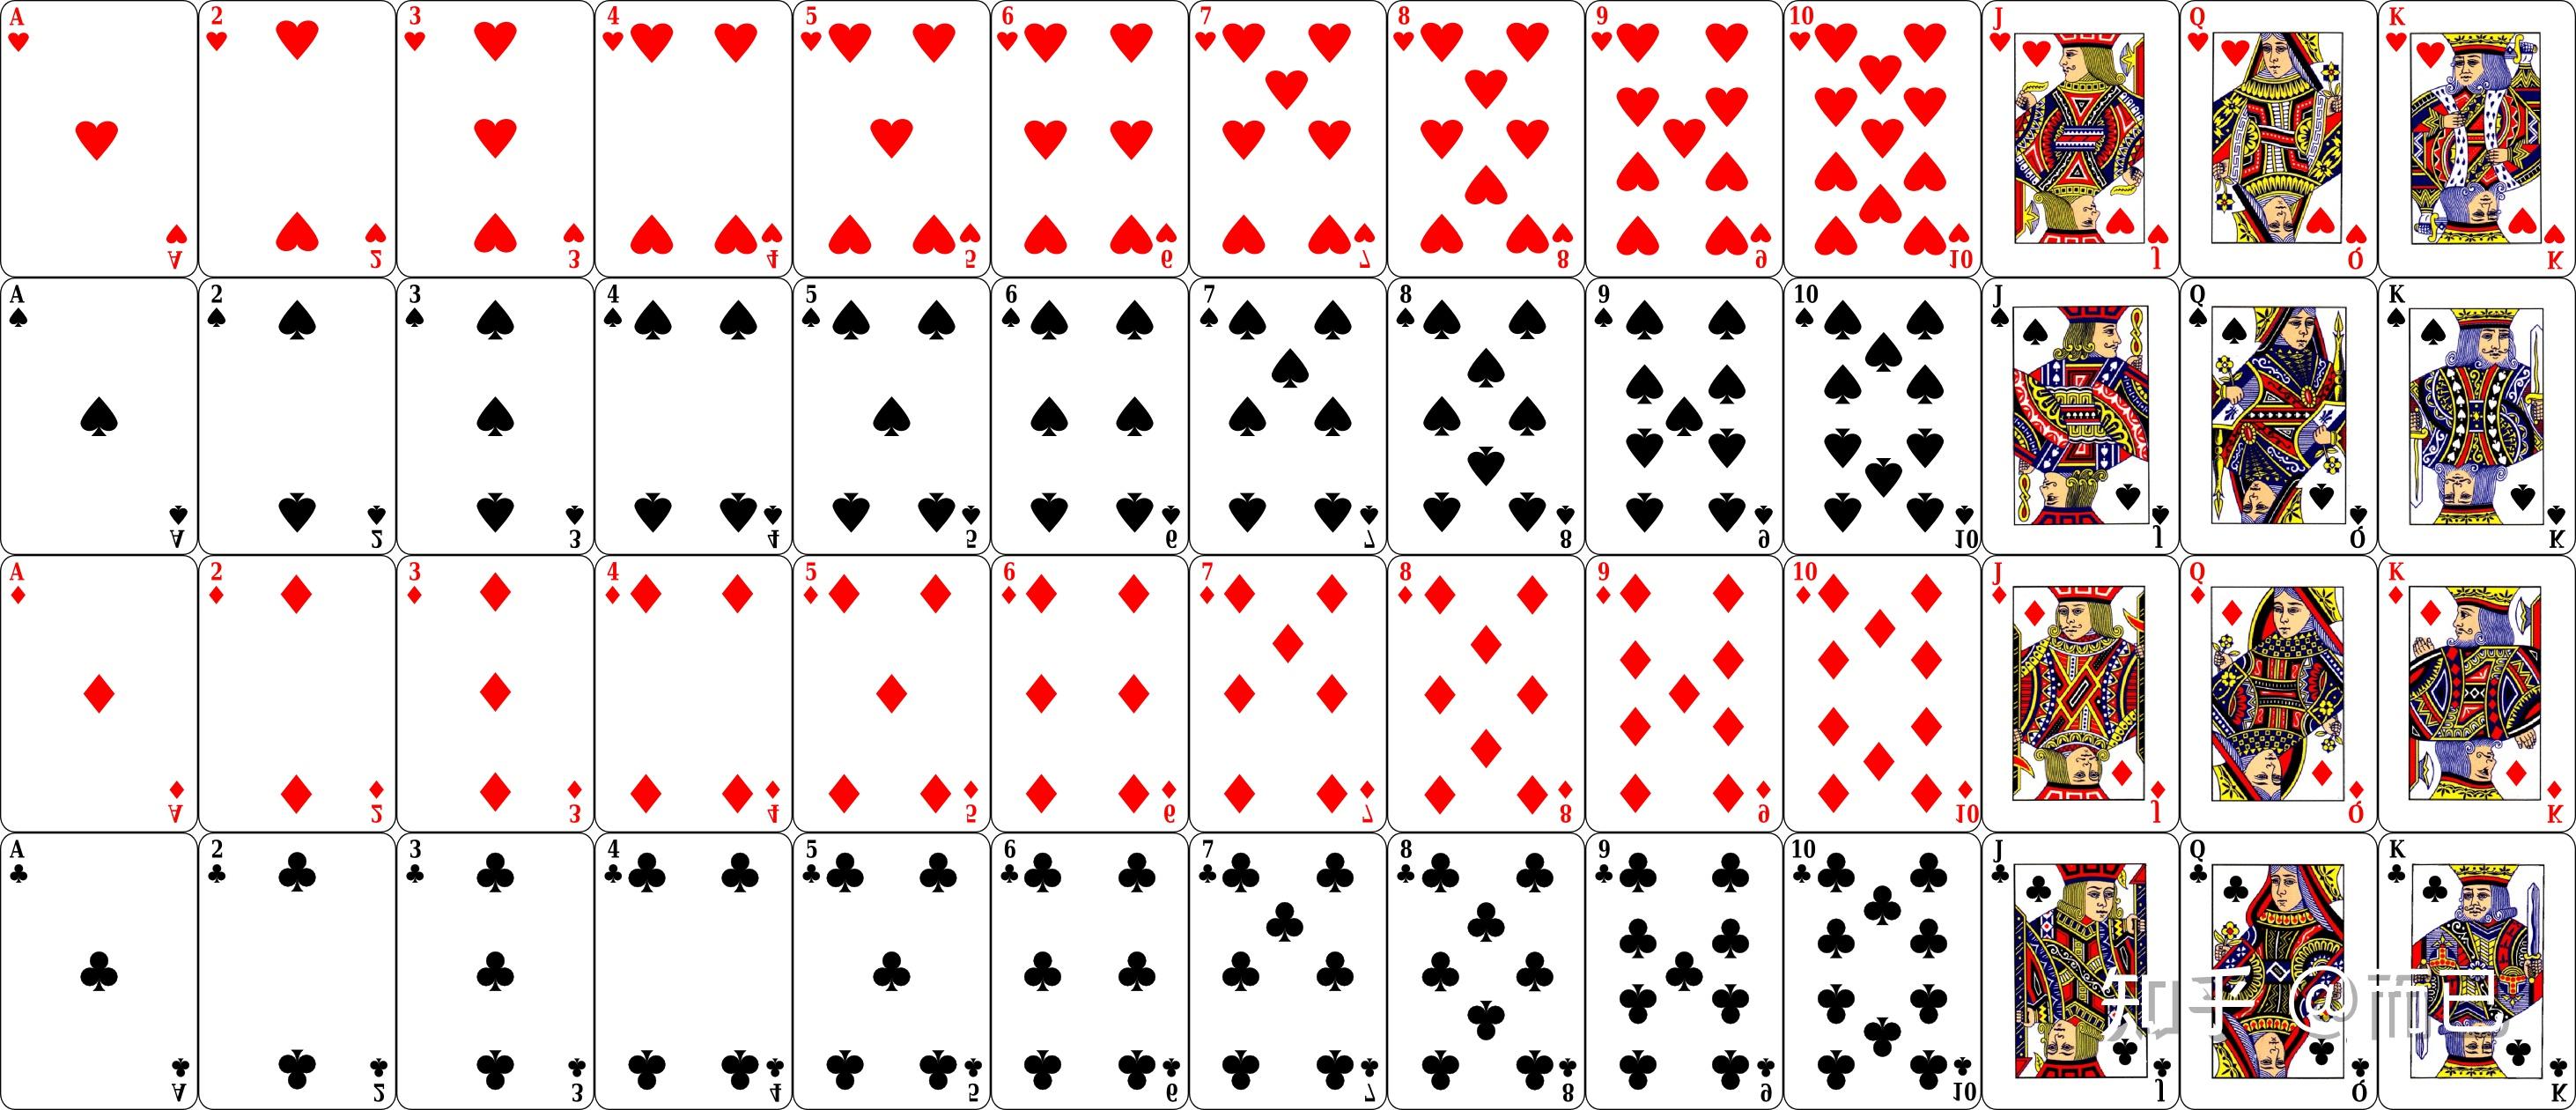 现在常见的扑克牌是国际性的扑克牌,每幅共54张,有两张王牌和52张正牌